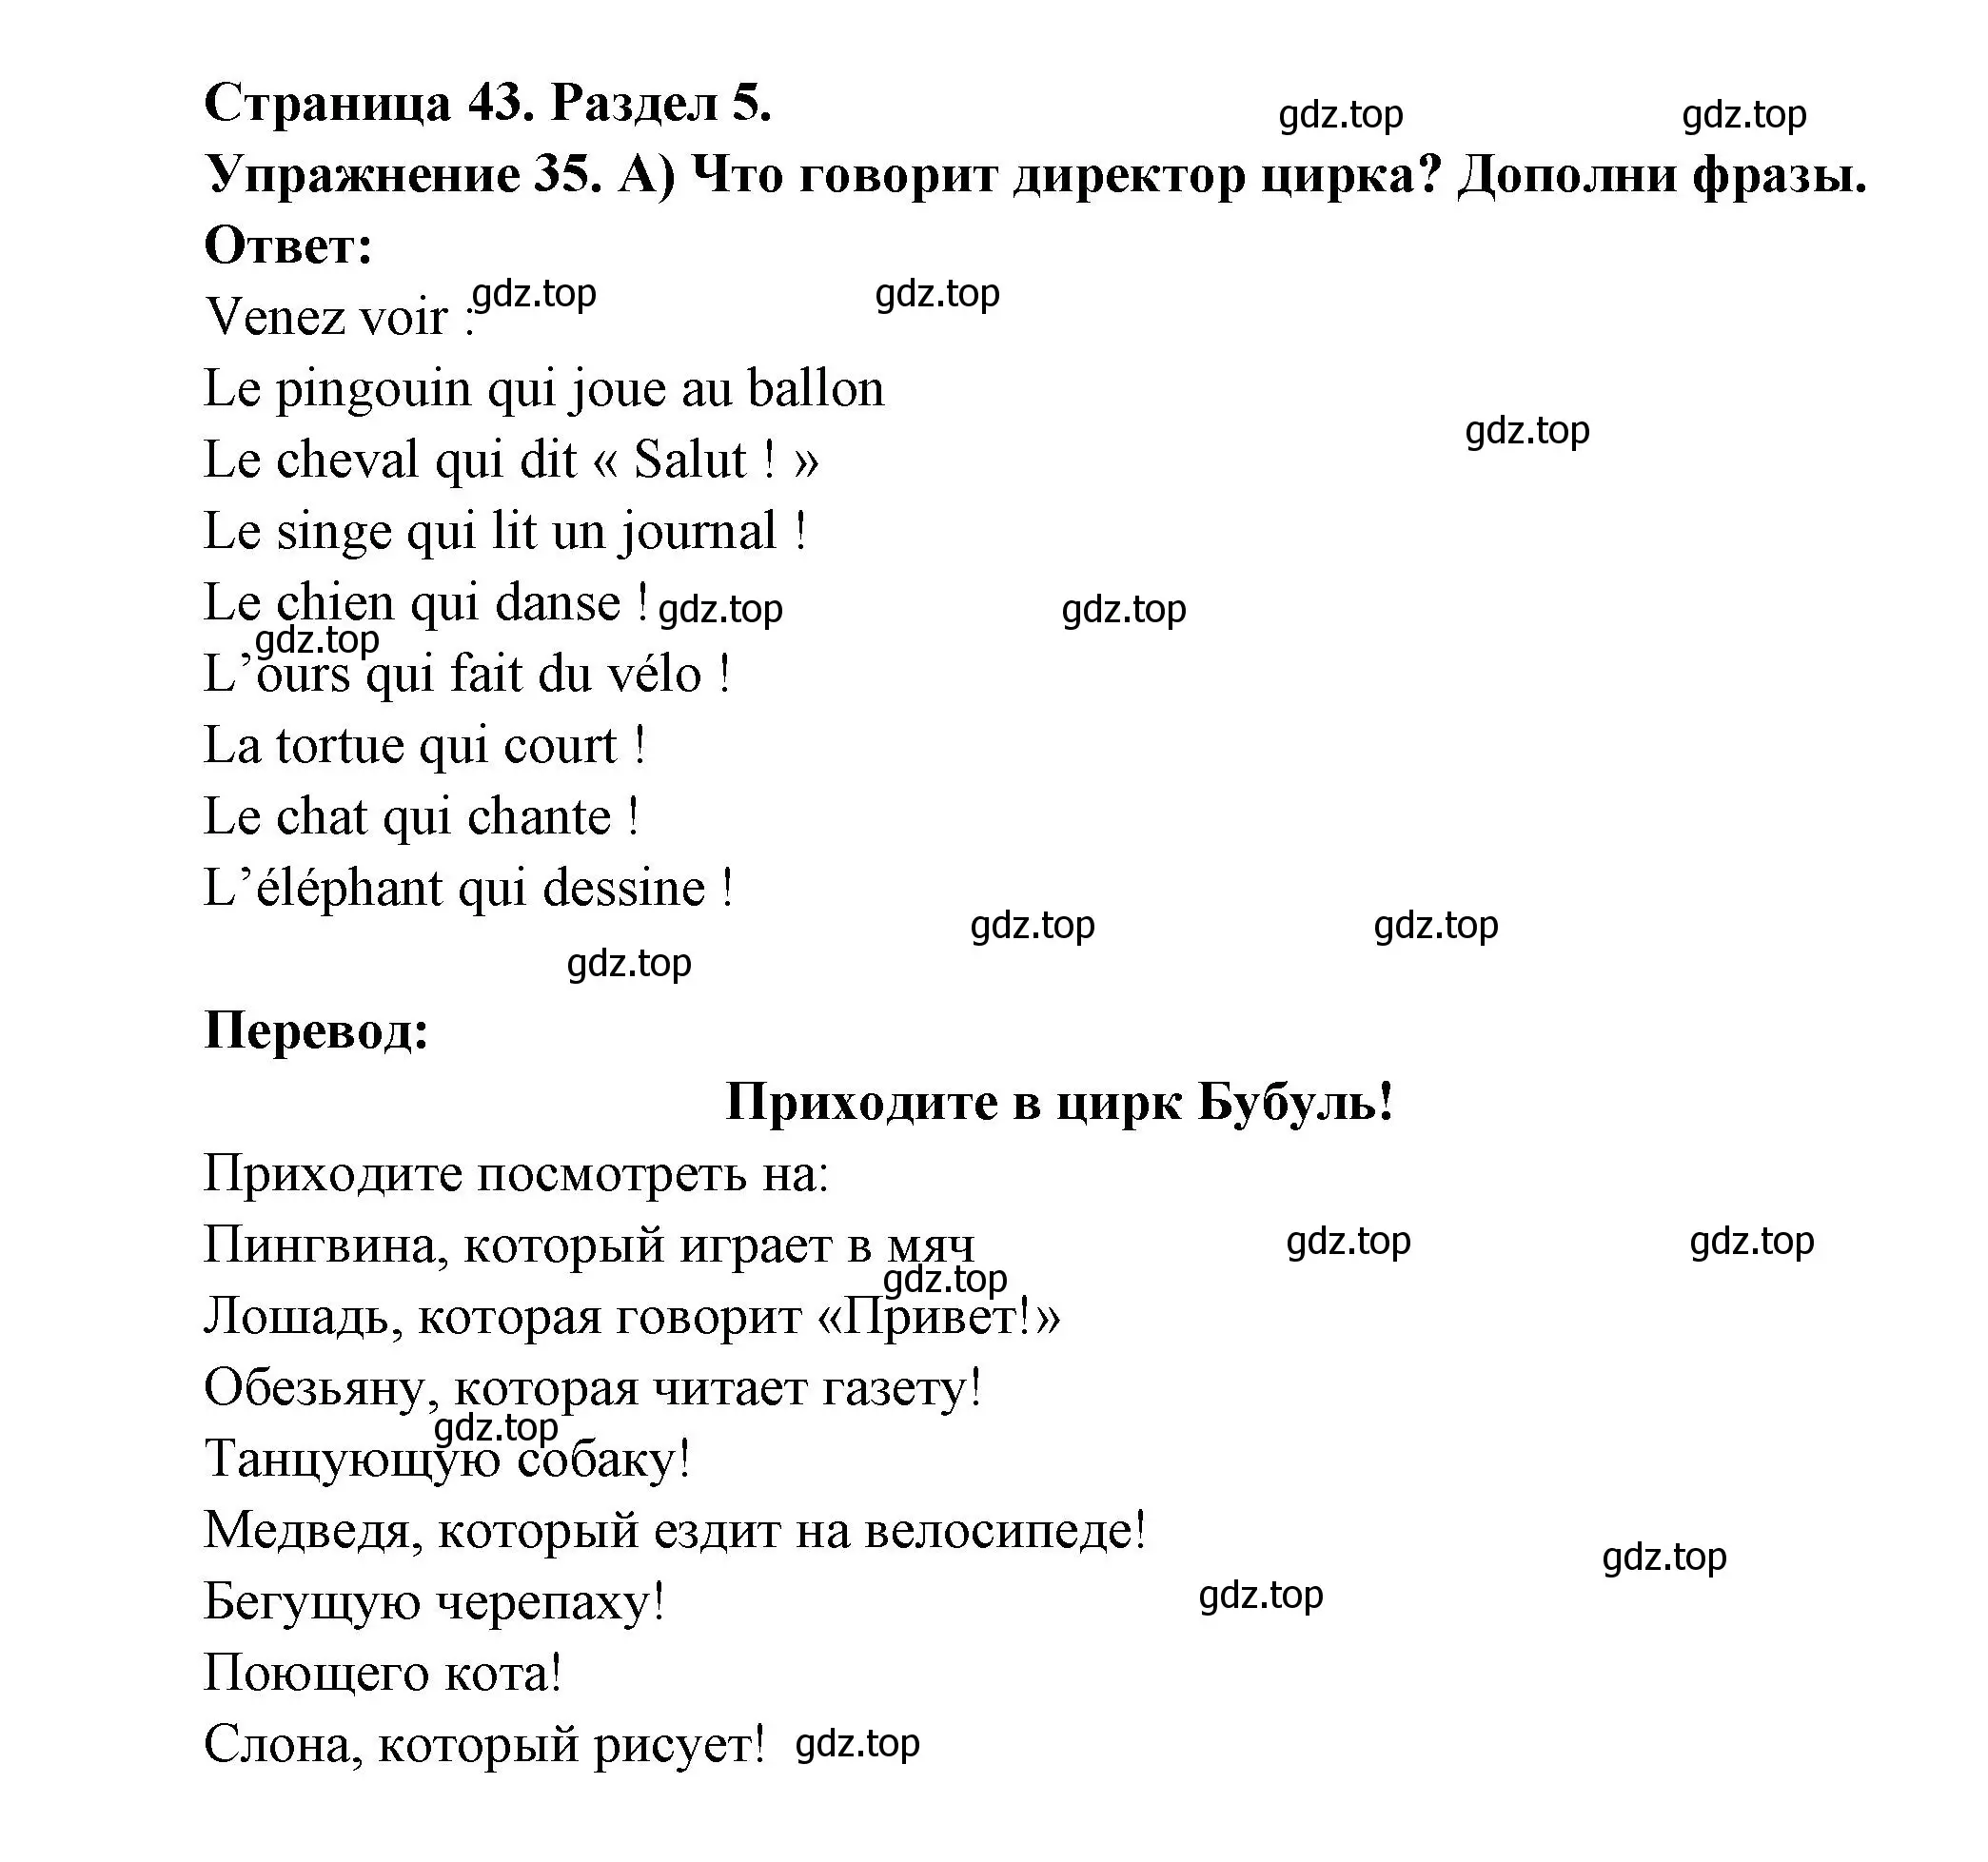 Решение номер 35 (страница 43) гдз по французскому языку 5 класс Береговская, Белосельская, учебник 2 часть